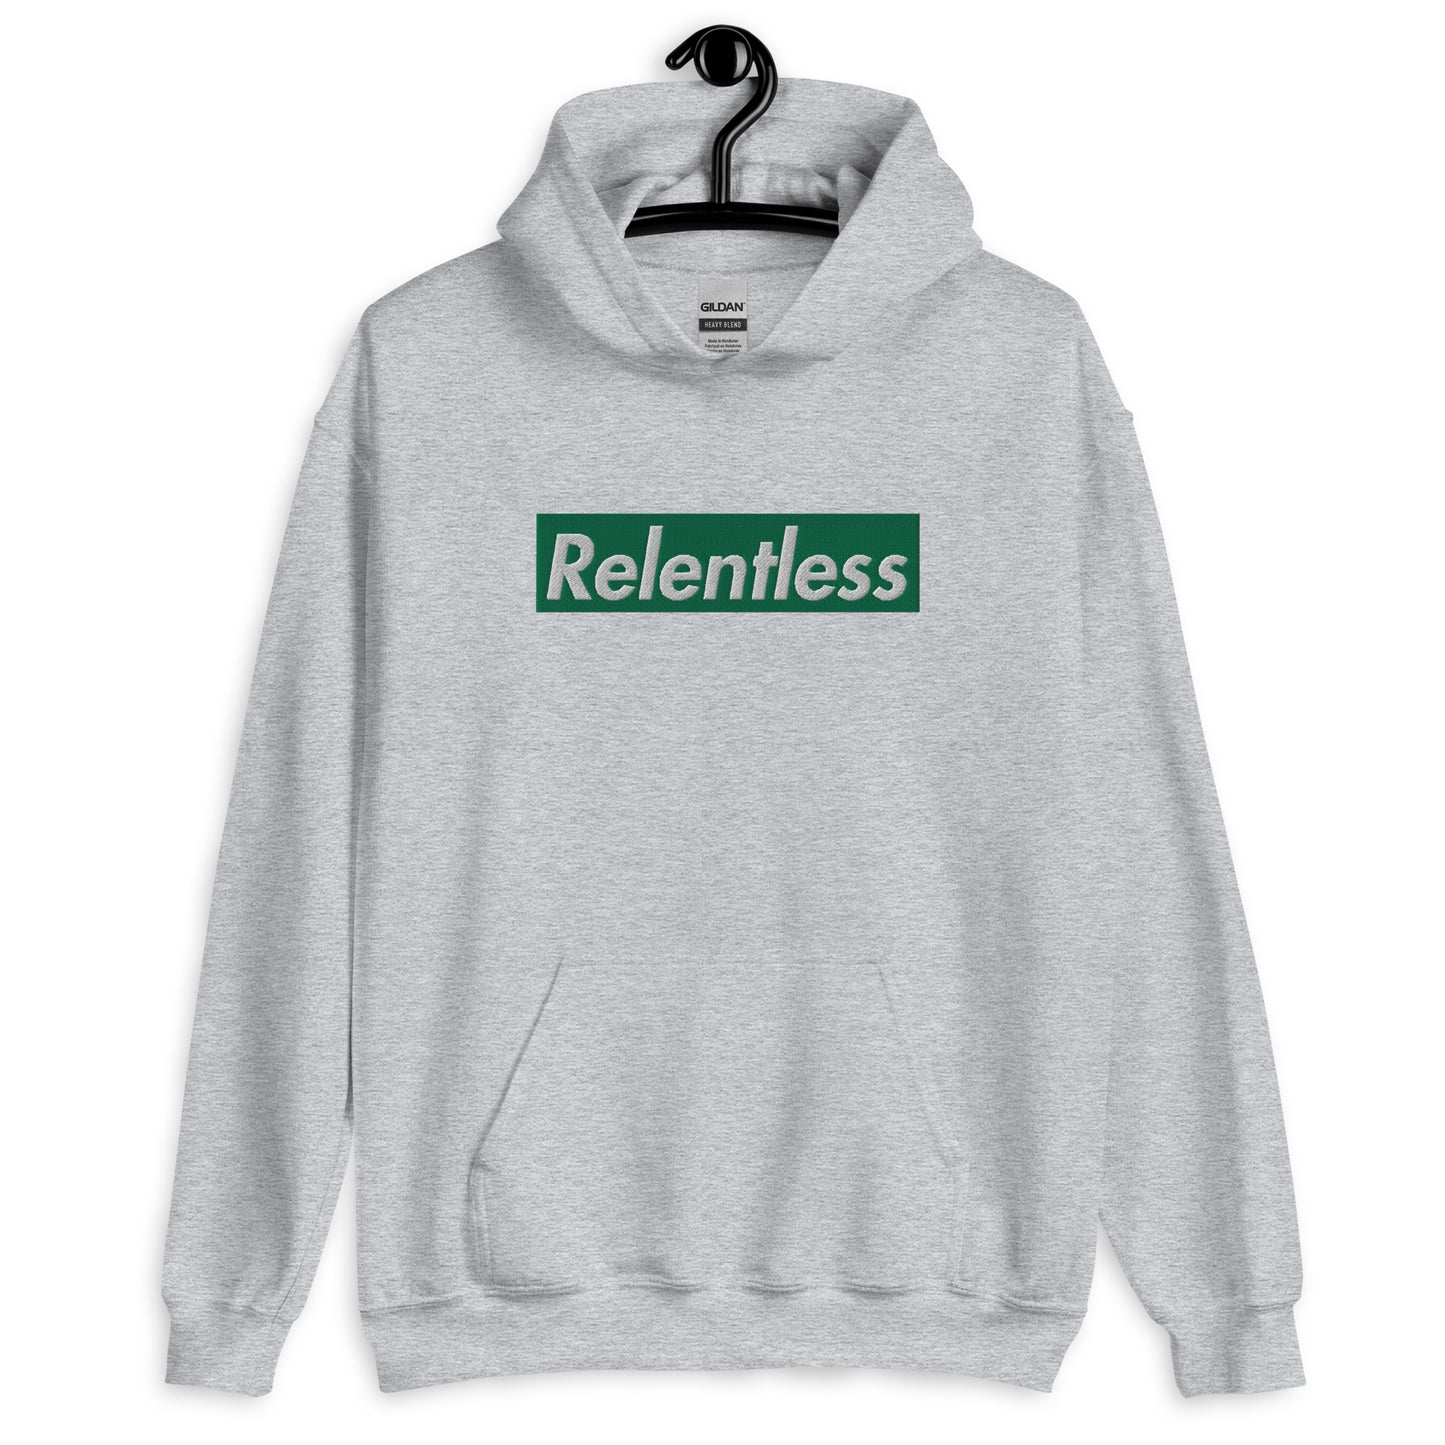 "Relentless" Hoodie